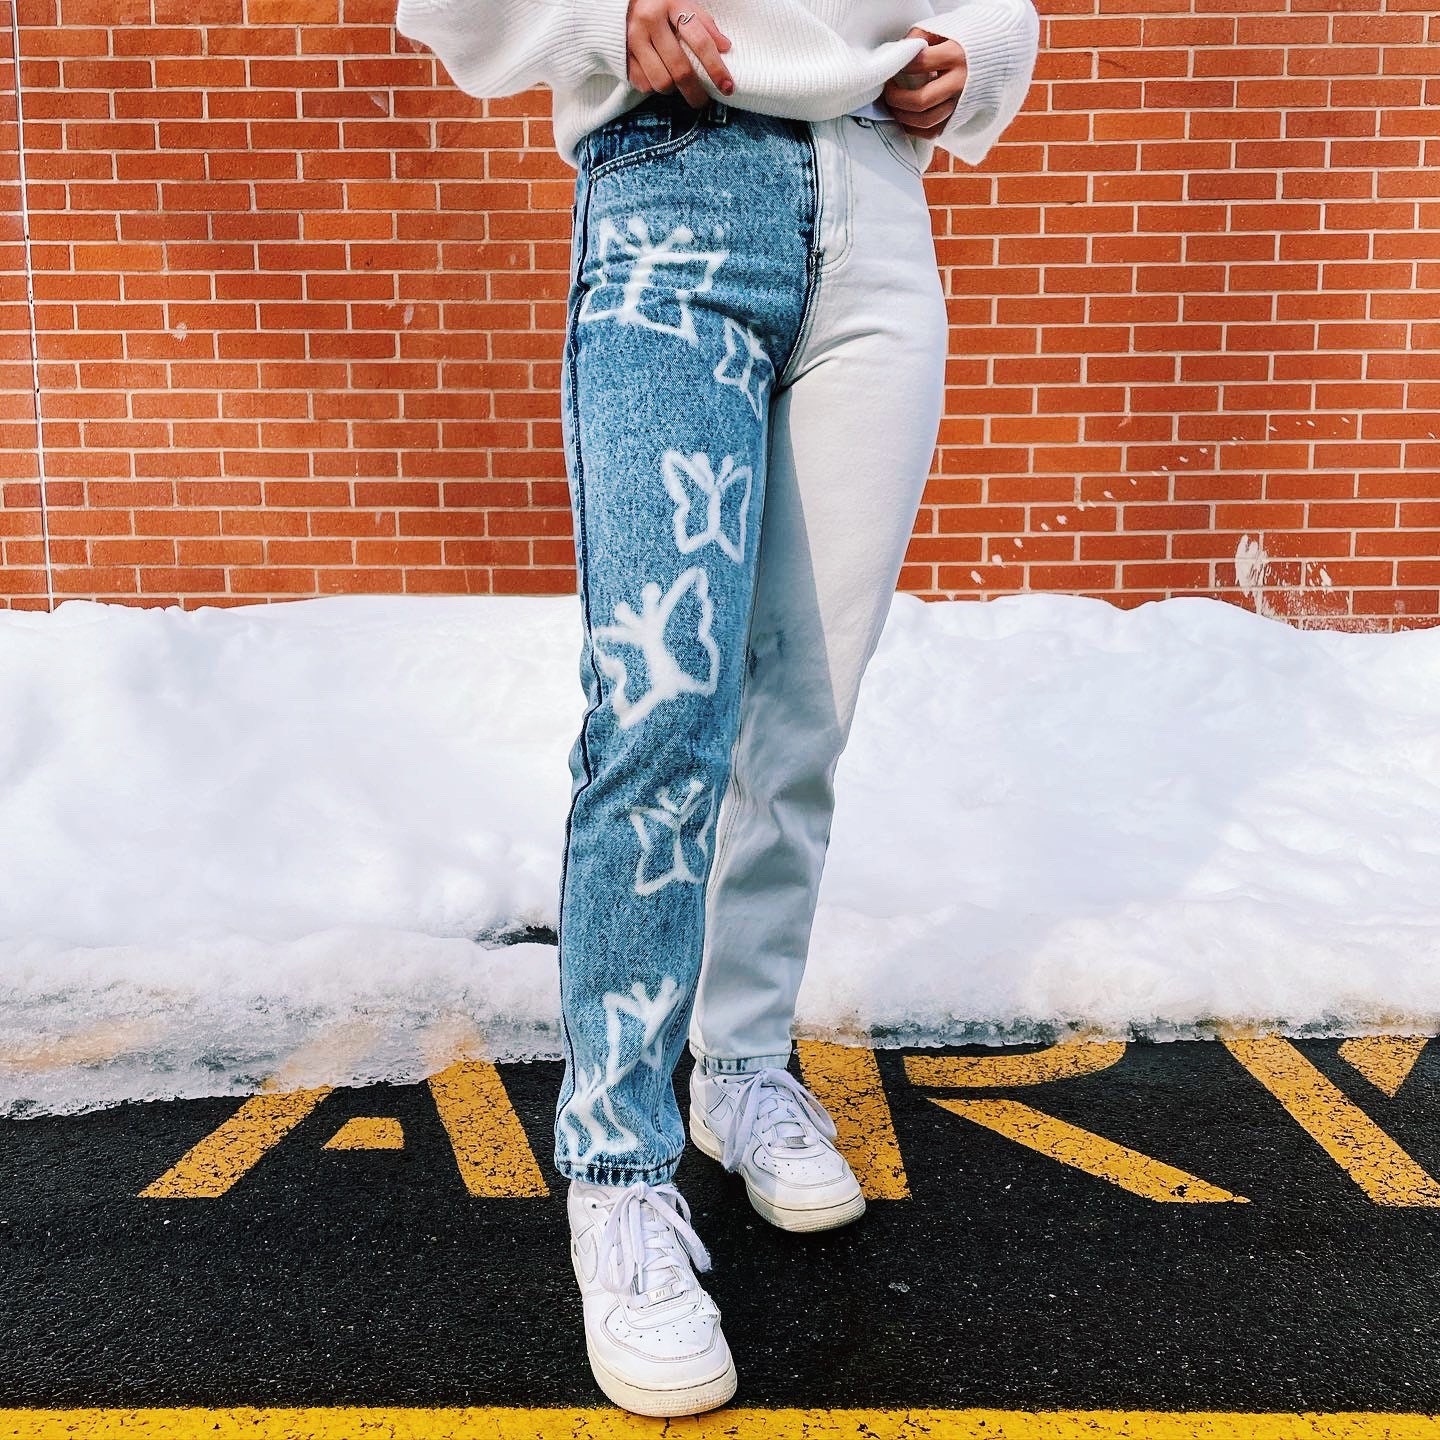 DIY Bleached Louis Vuitton Jeans 